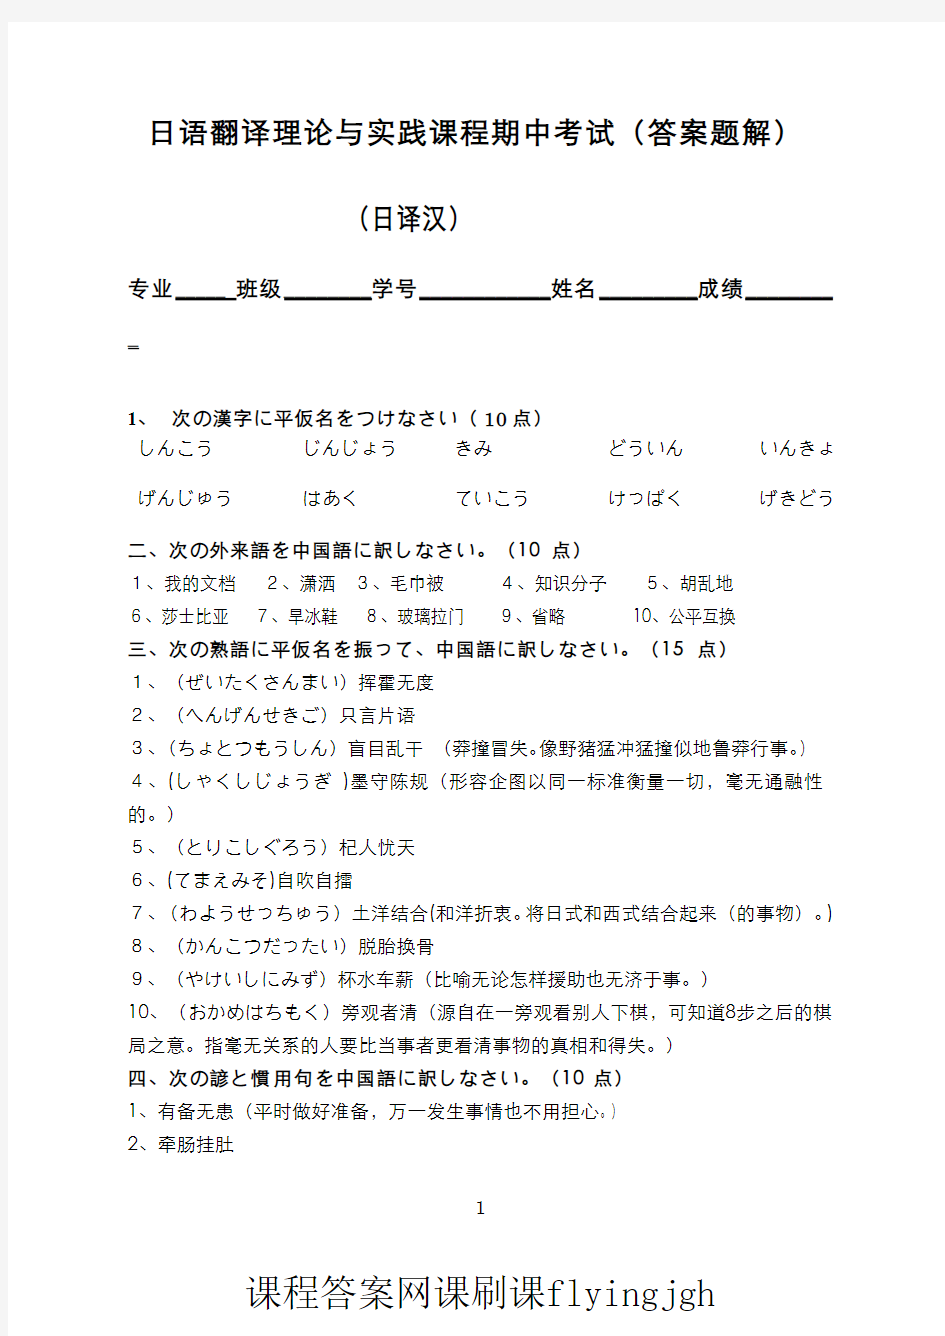 中国大学MOOC慕课爱课程(12)--日语翻译理论与实践日译汉部分期中考试试卷2(答案)网课刷课